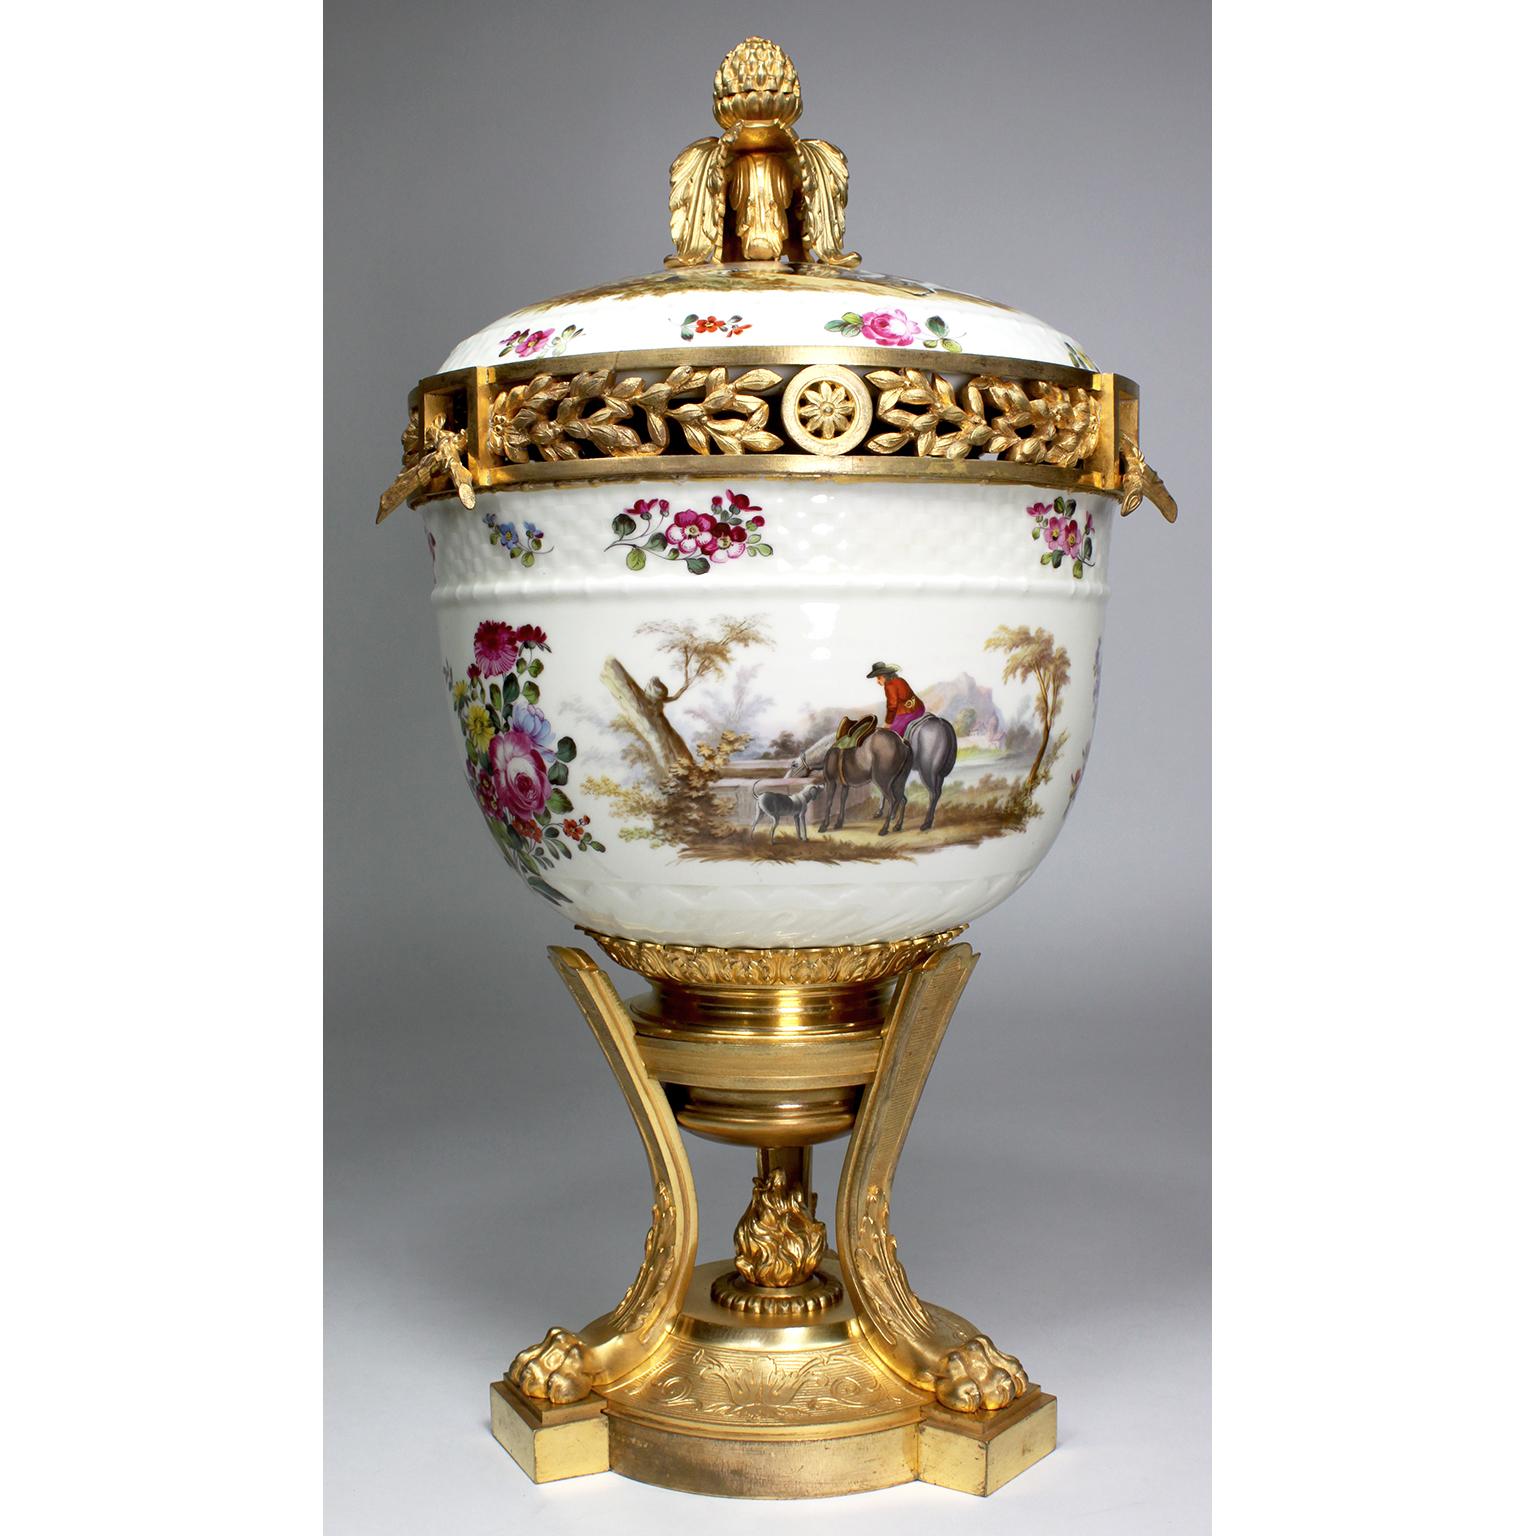 Très beau vase-urne à pot-pourri en porcelaine et bronze doré avec couvercle, attribué à Meissen. L'urne ovoïde en porcelaine blanche, décorée sur tous les côtés et sur le couvercle de scènes de chasse en plein air, avec des paysans, des chevaux,